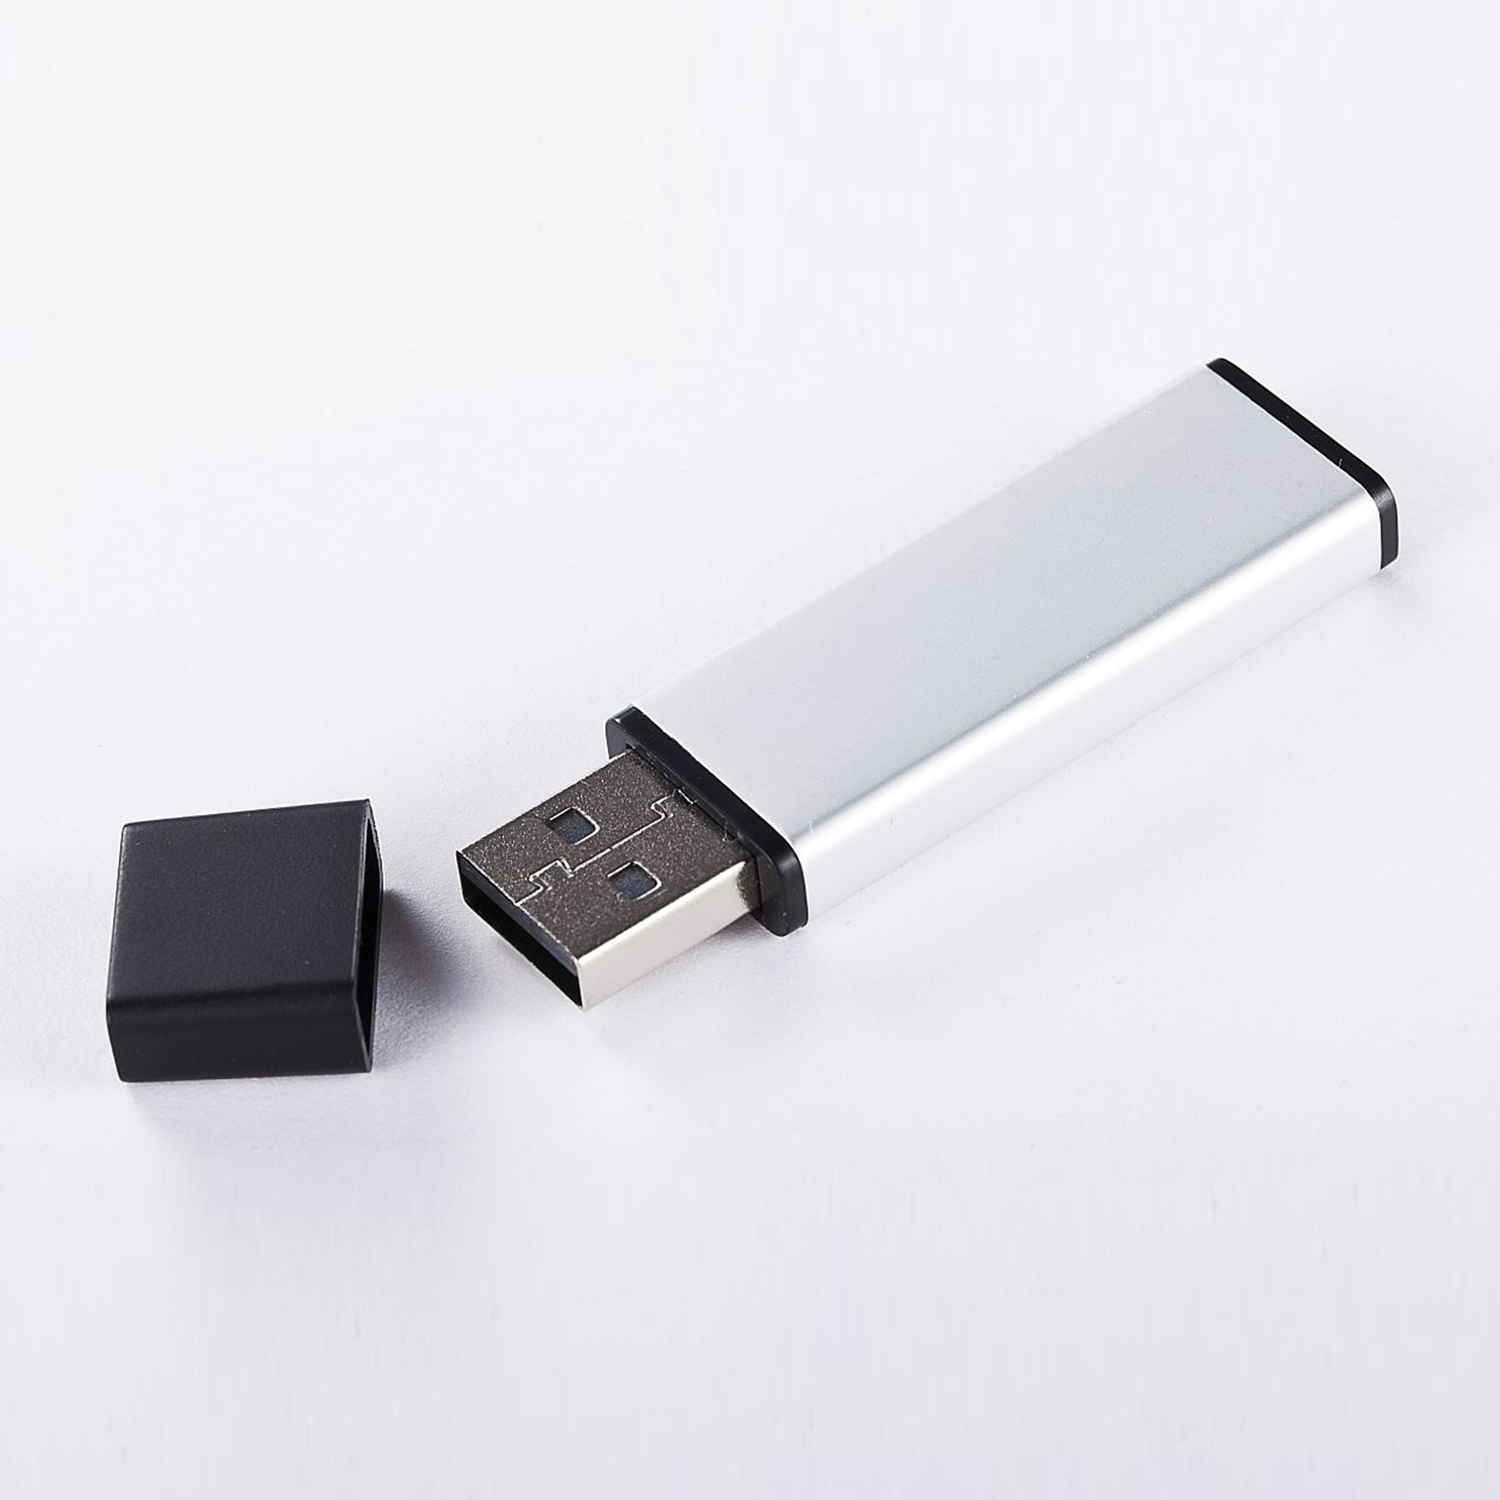 XLYNE USB Stick 16 GB 16 (ALUMINIUM, GB) USB 2.0 